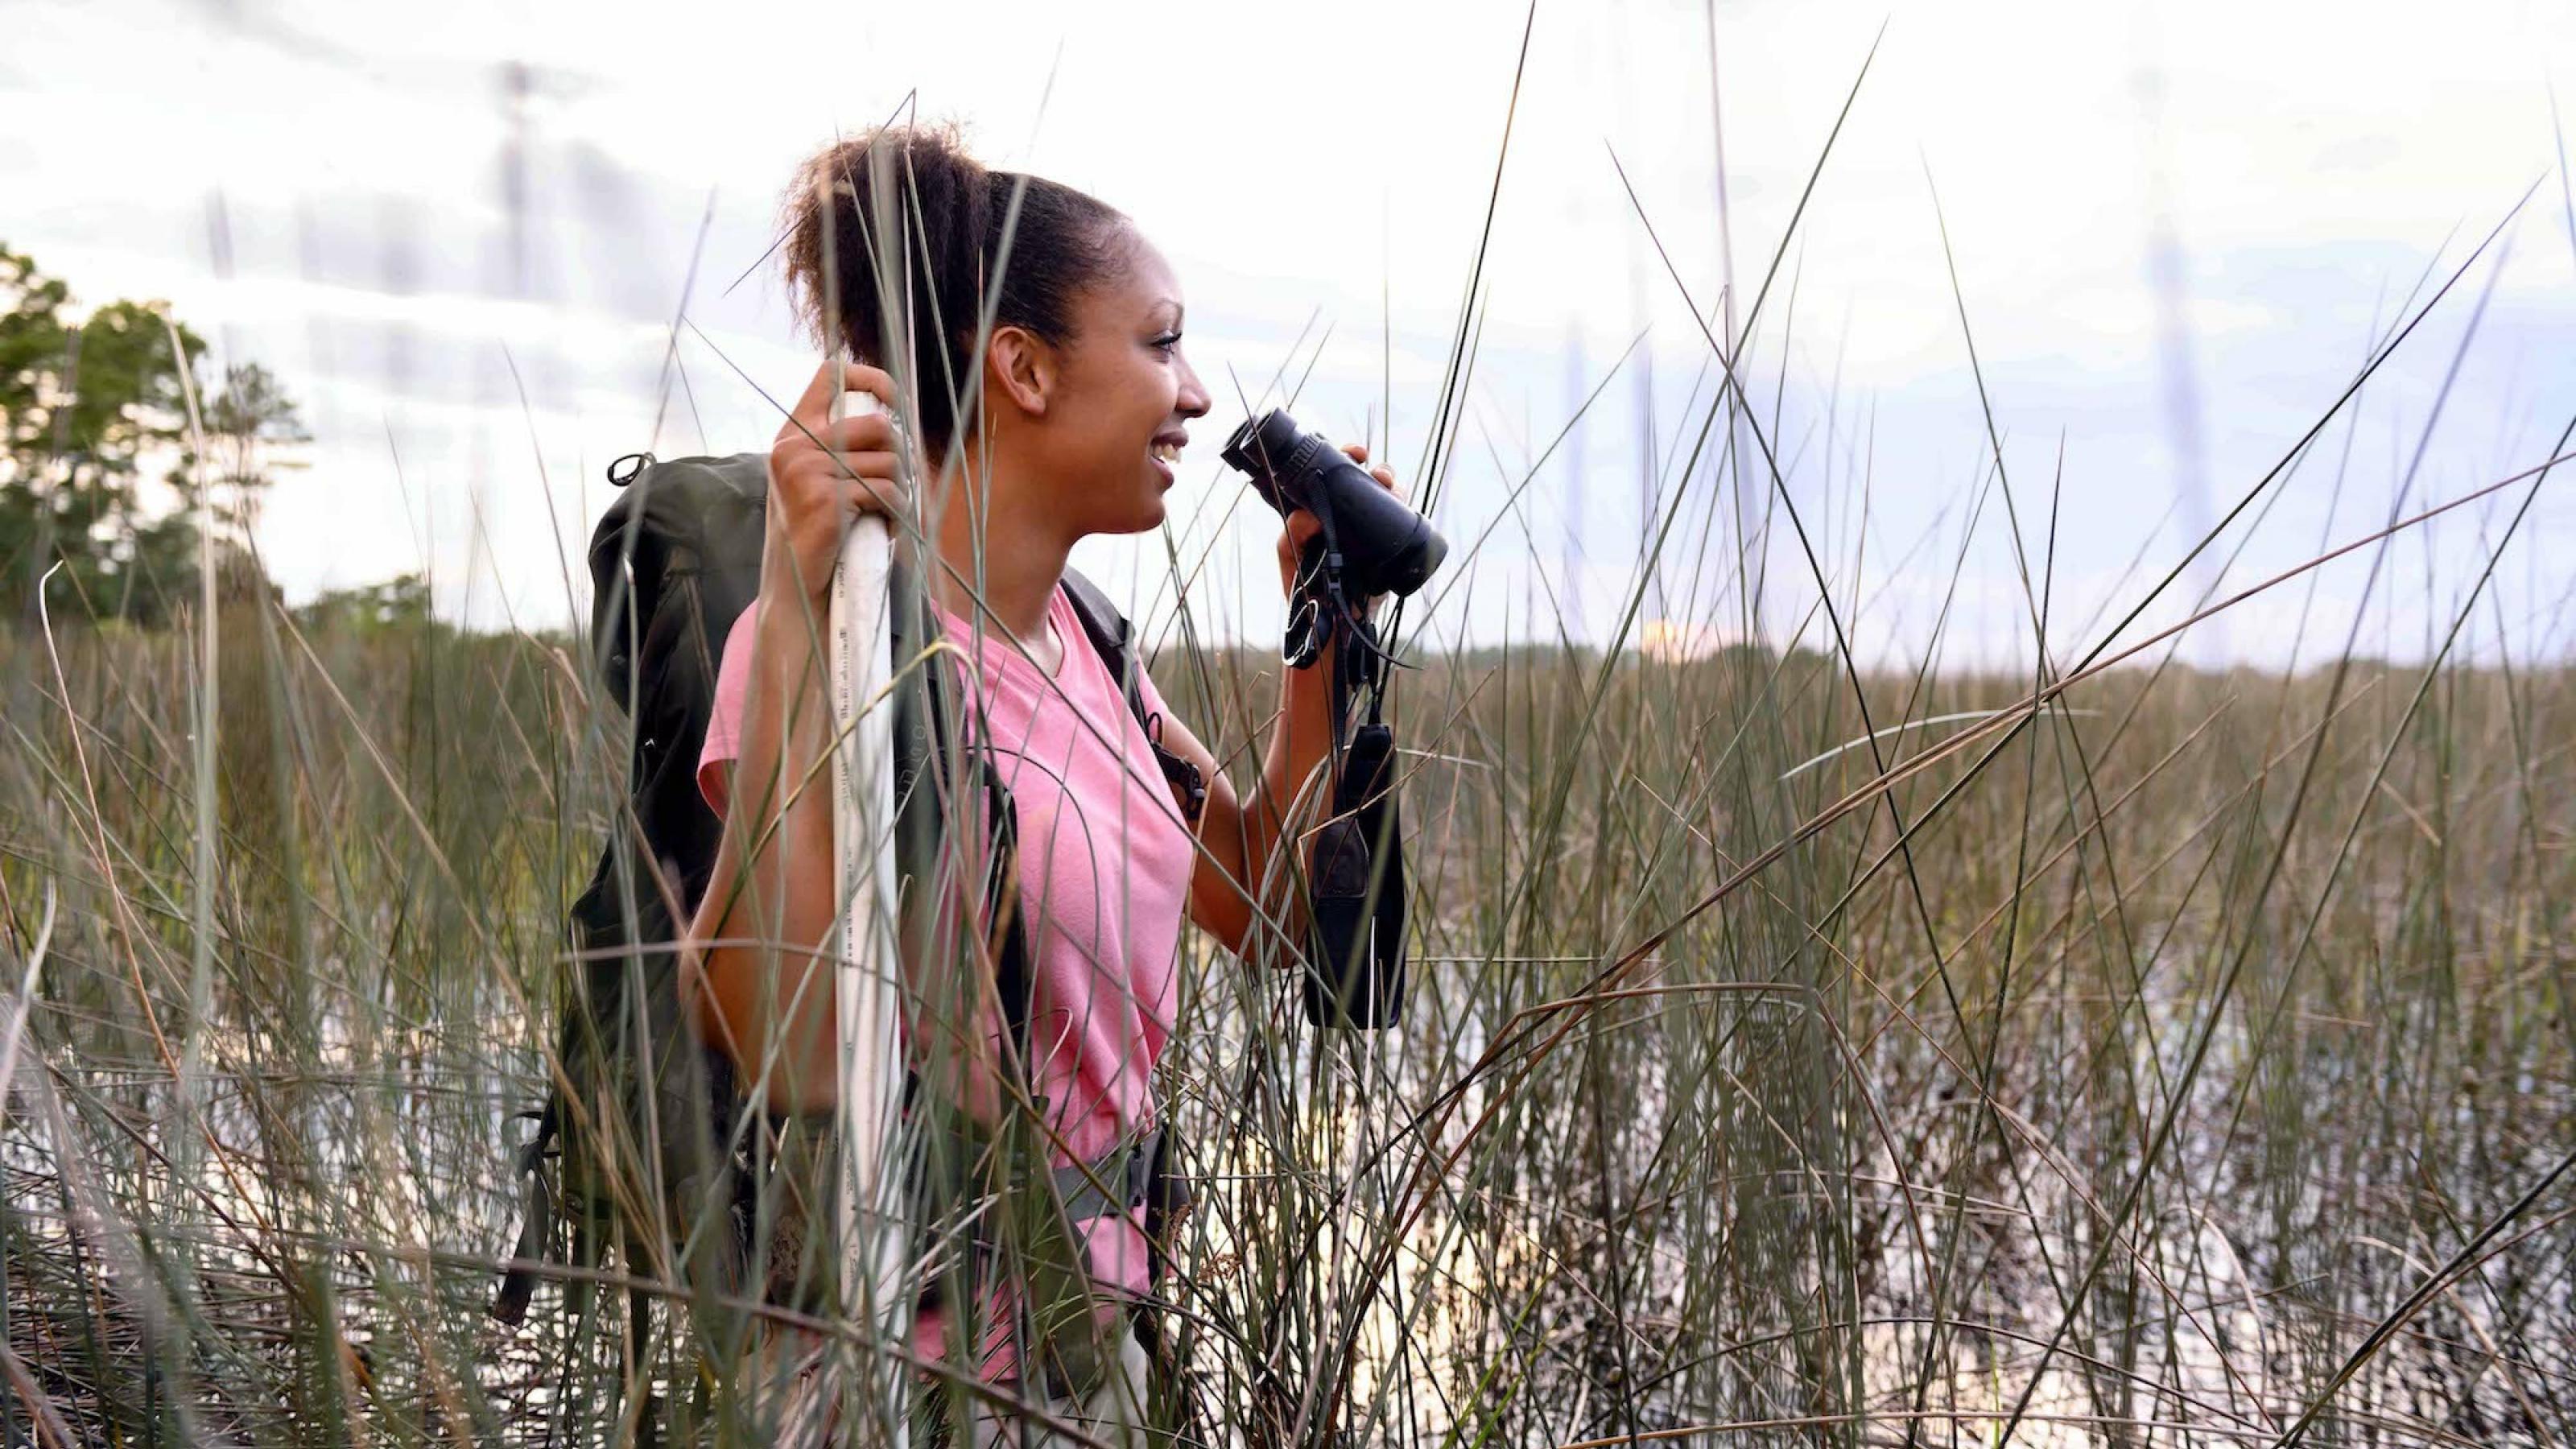 Zu sehen ist die junge Ornithologin Corina Newsome, die mit einem Fernglas in der Hand in einem Sumpf bis zur Hüfte im Wasser steht.